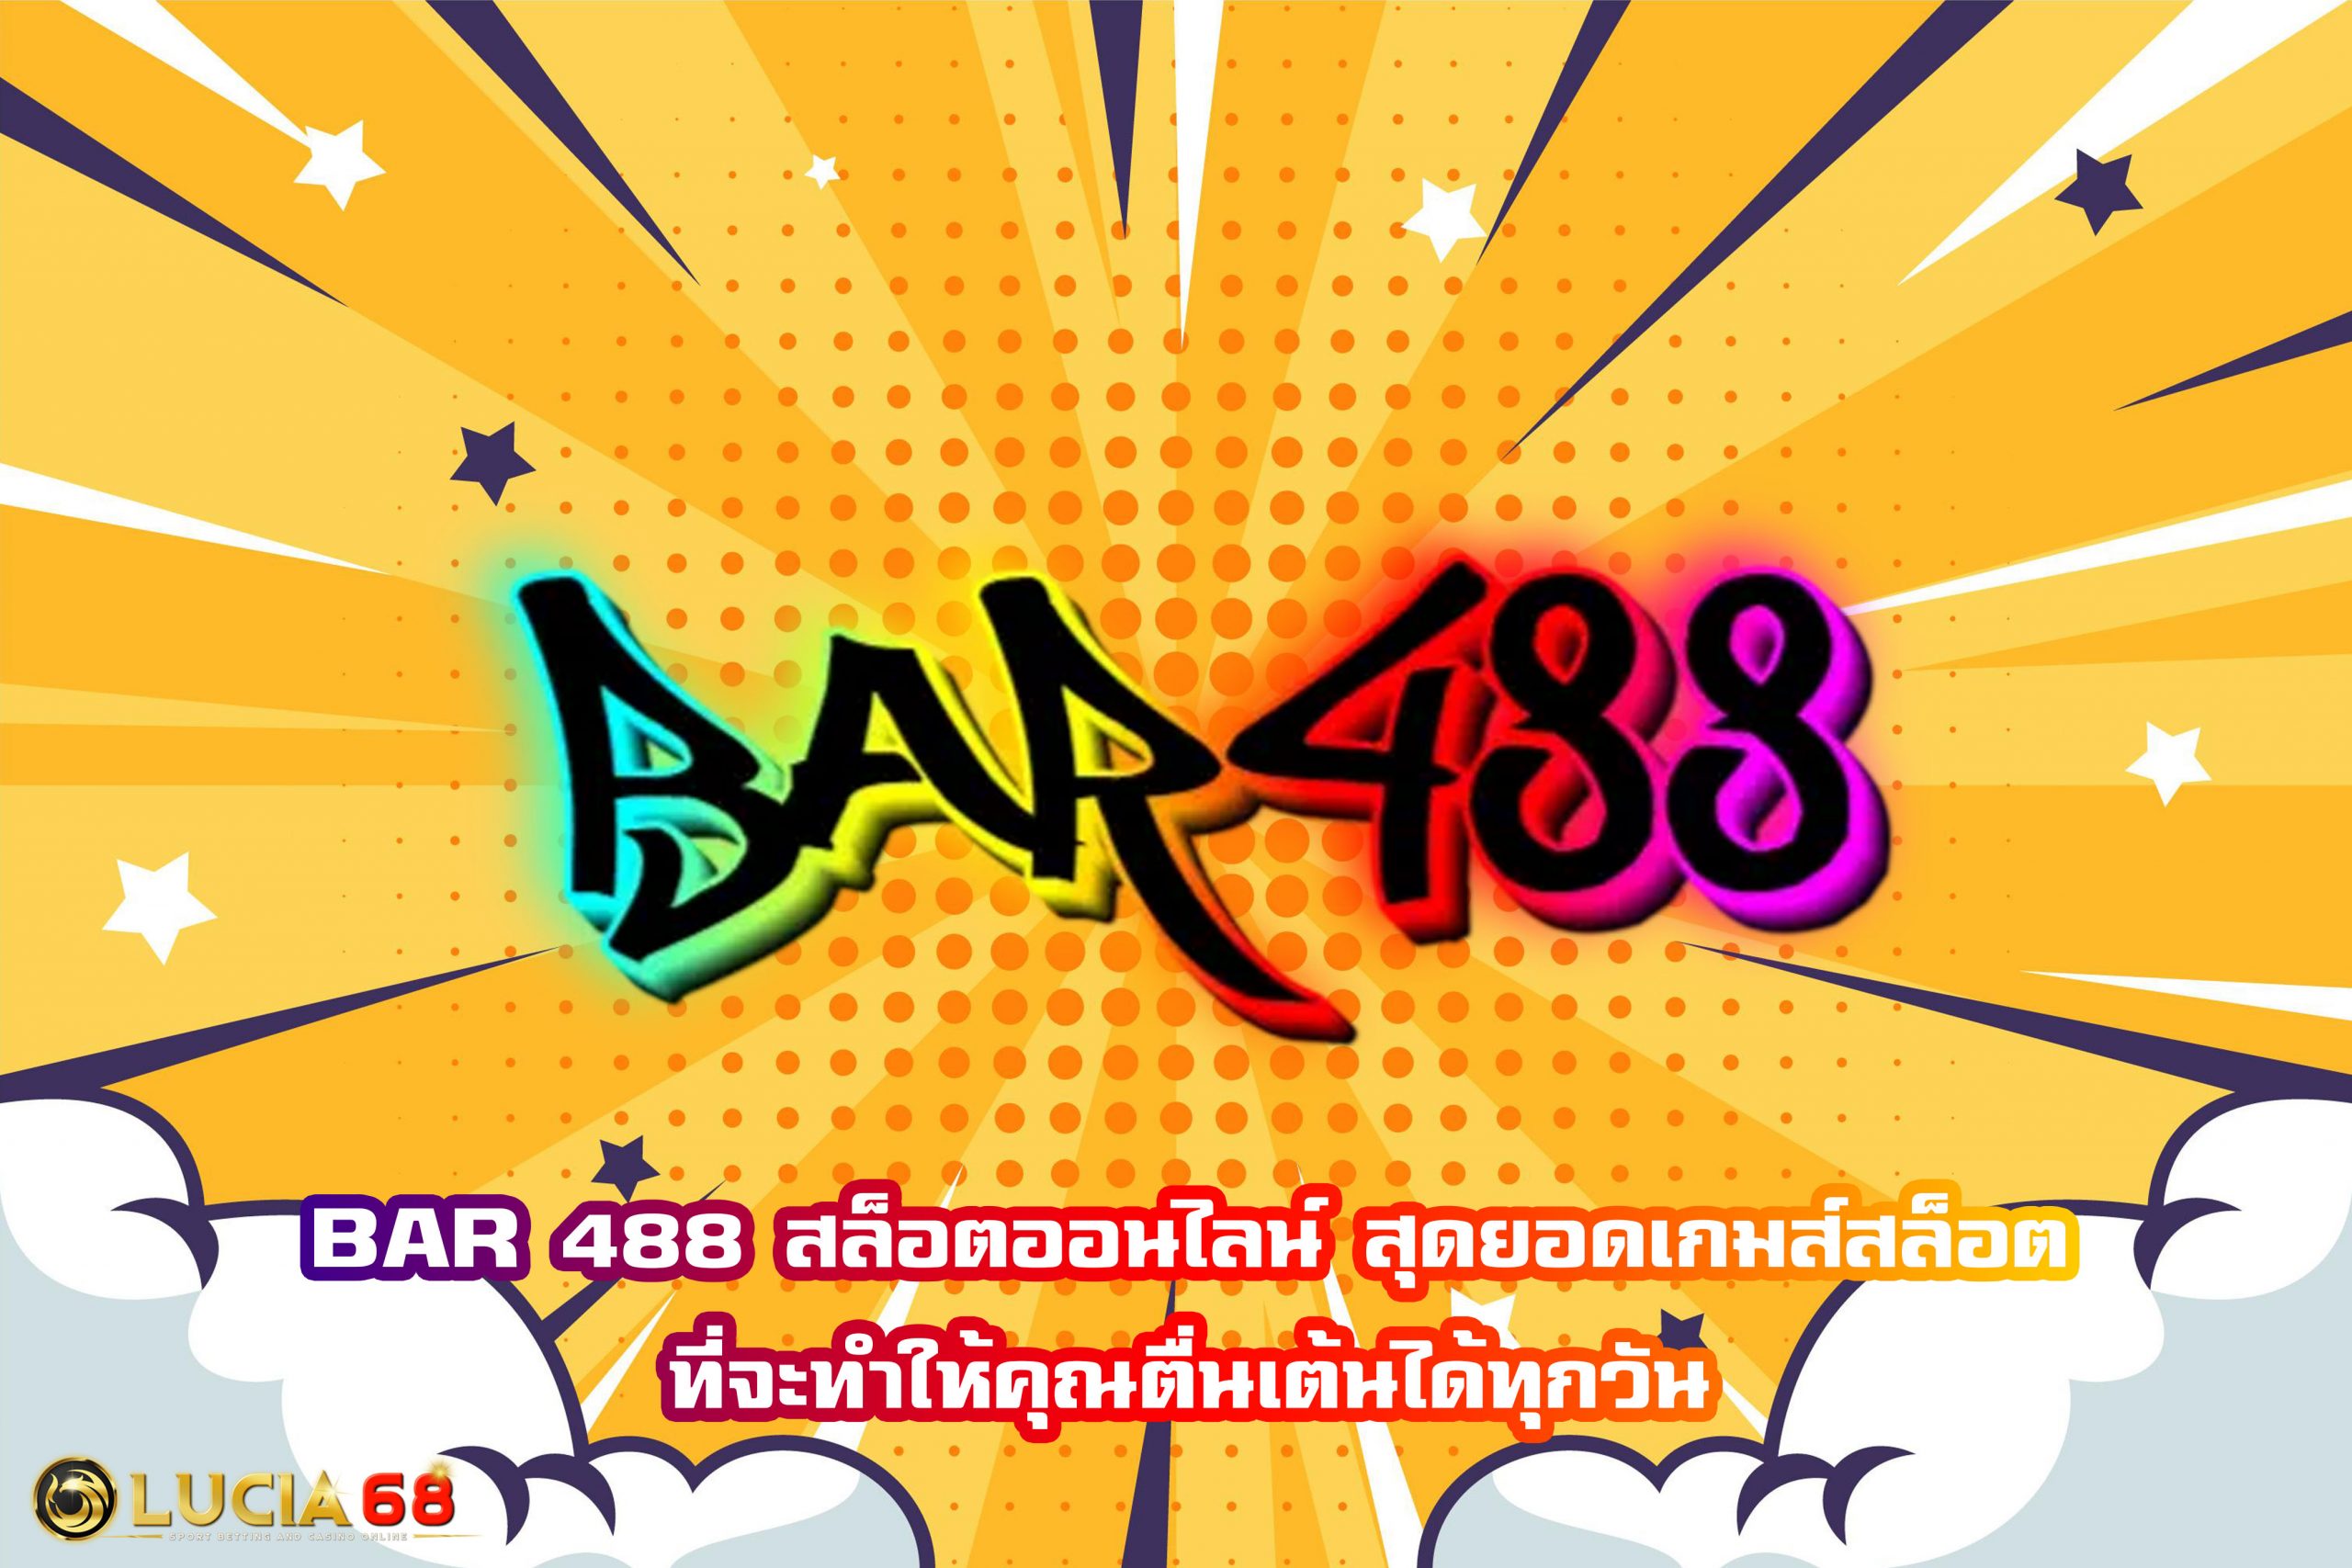 BAR 488 สล็อตออนไลน์ สุดยอดเกมส์สล็อตที่จะทำให้คุณตื่นเต้นได้ทุกวัน